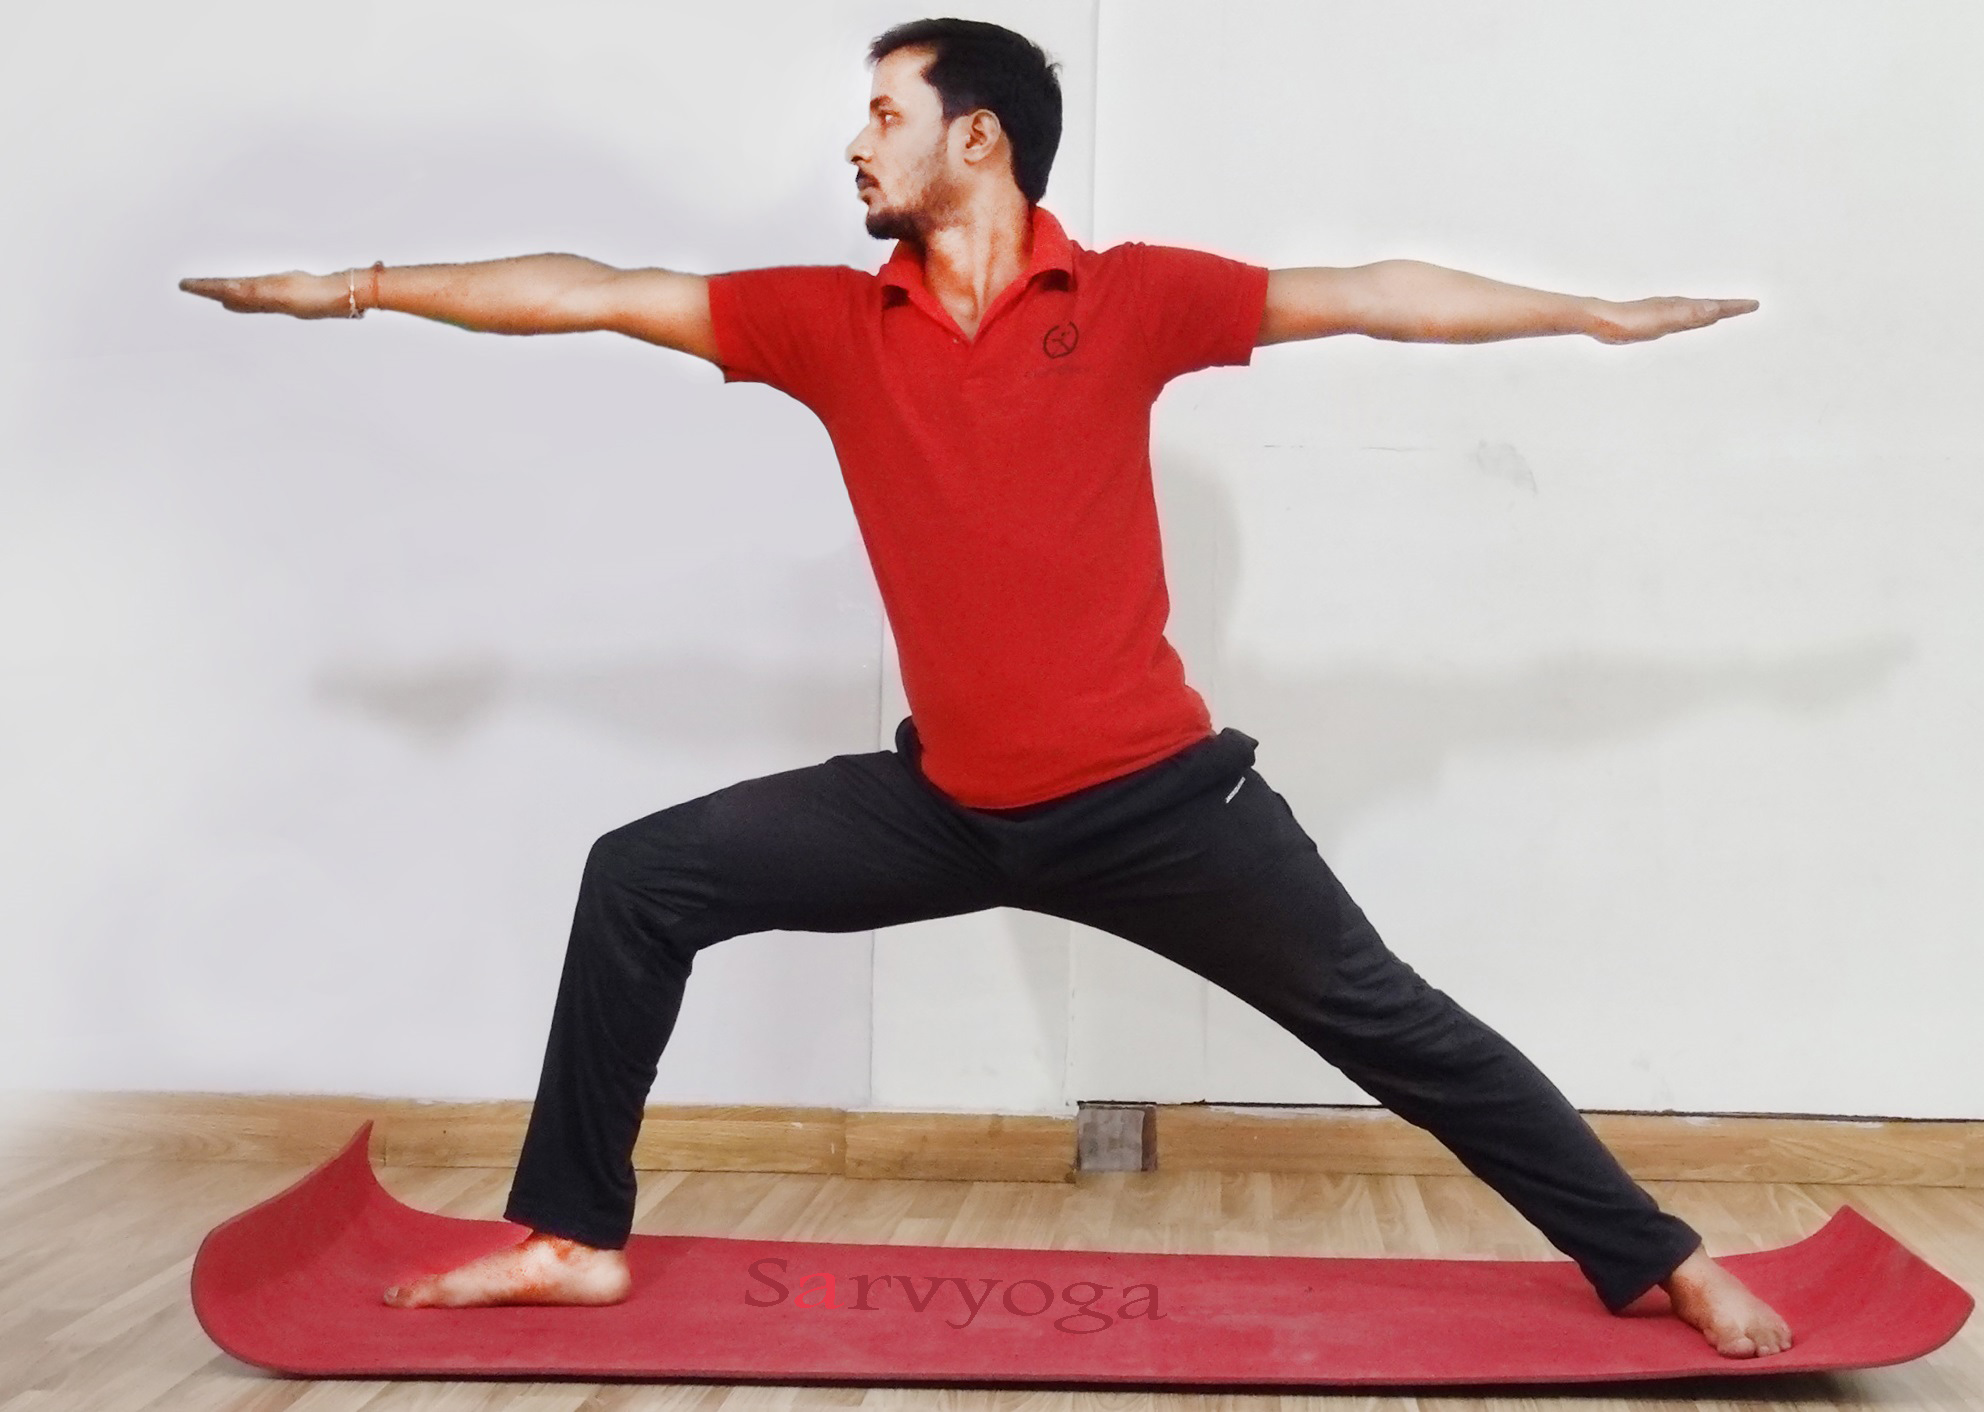 Вирабхадрасана 1 или поза воина 1 в йоге: техника выполнения, польза, противопоказания